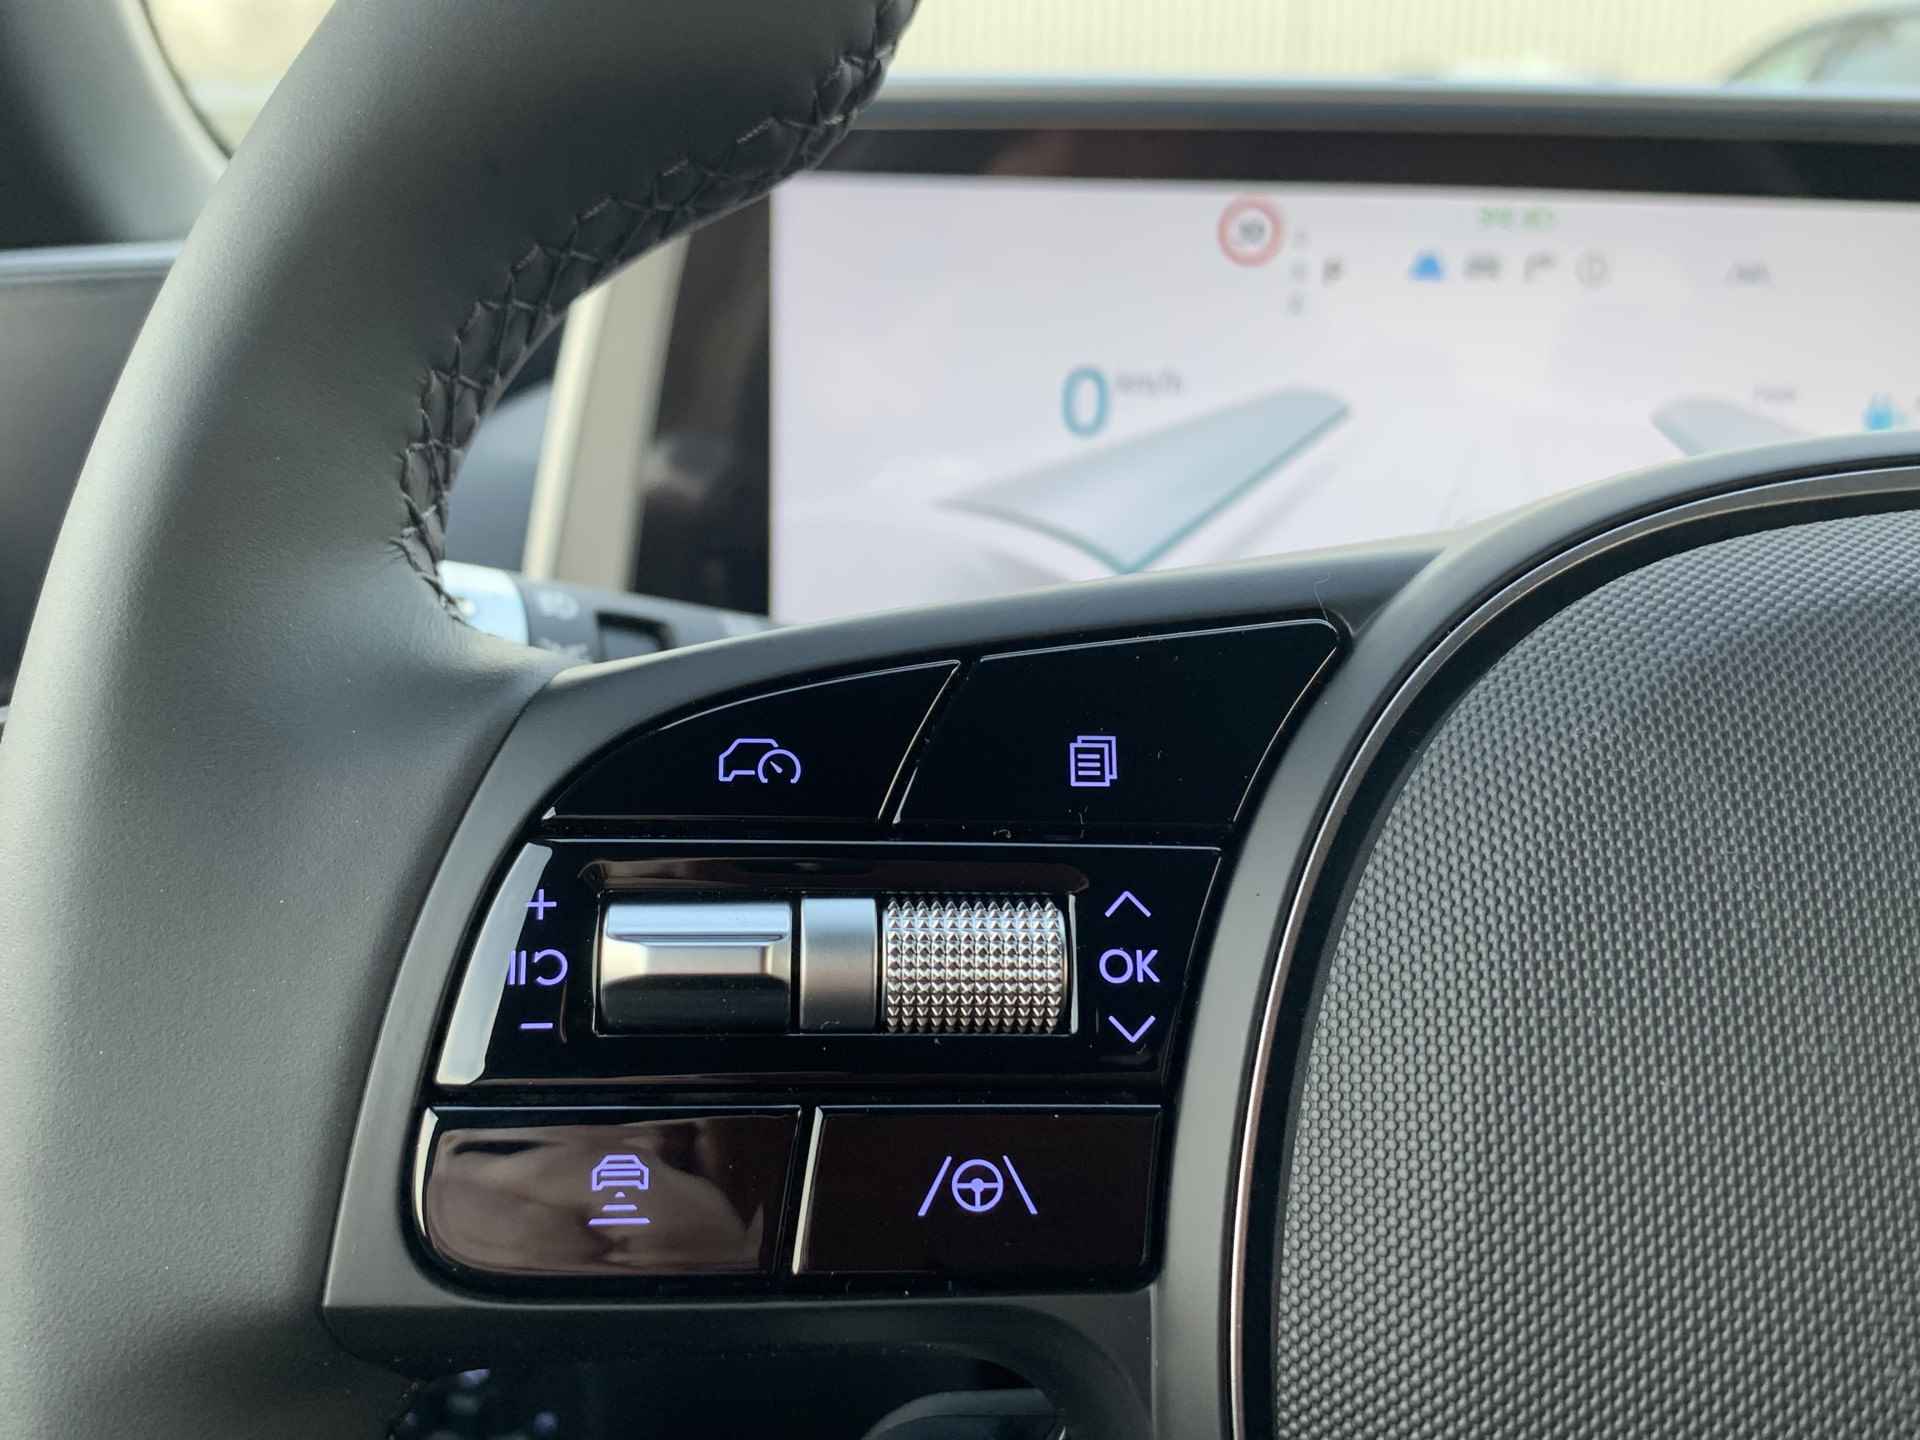 Hyundai IONIQ 6 Connect 53 kWh Volledig Elektrisch met 429 KM RANGE WLTP, Navigatie en Stoelverwarming Uit voorraad leverbaar! - 17/37